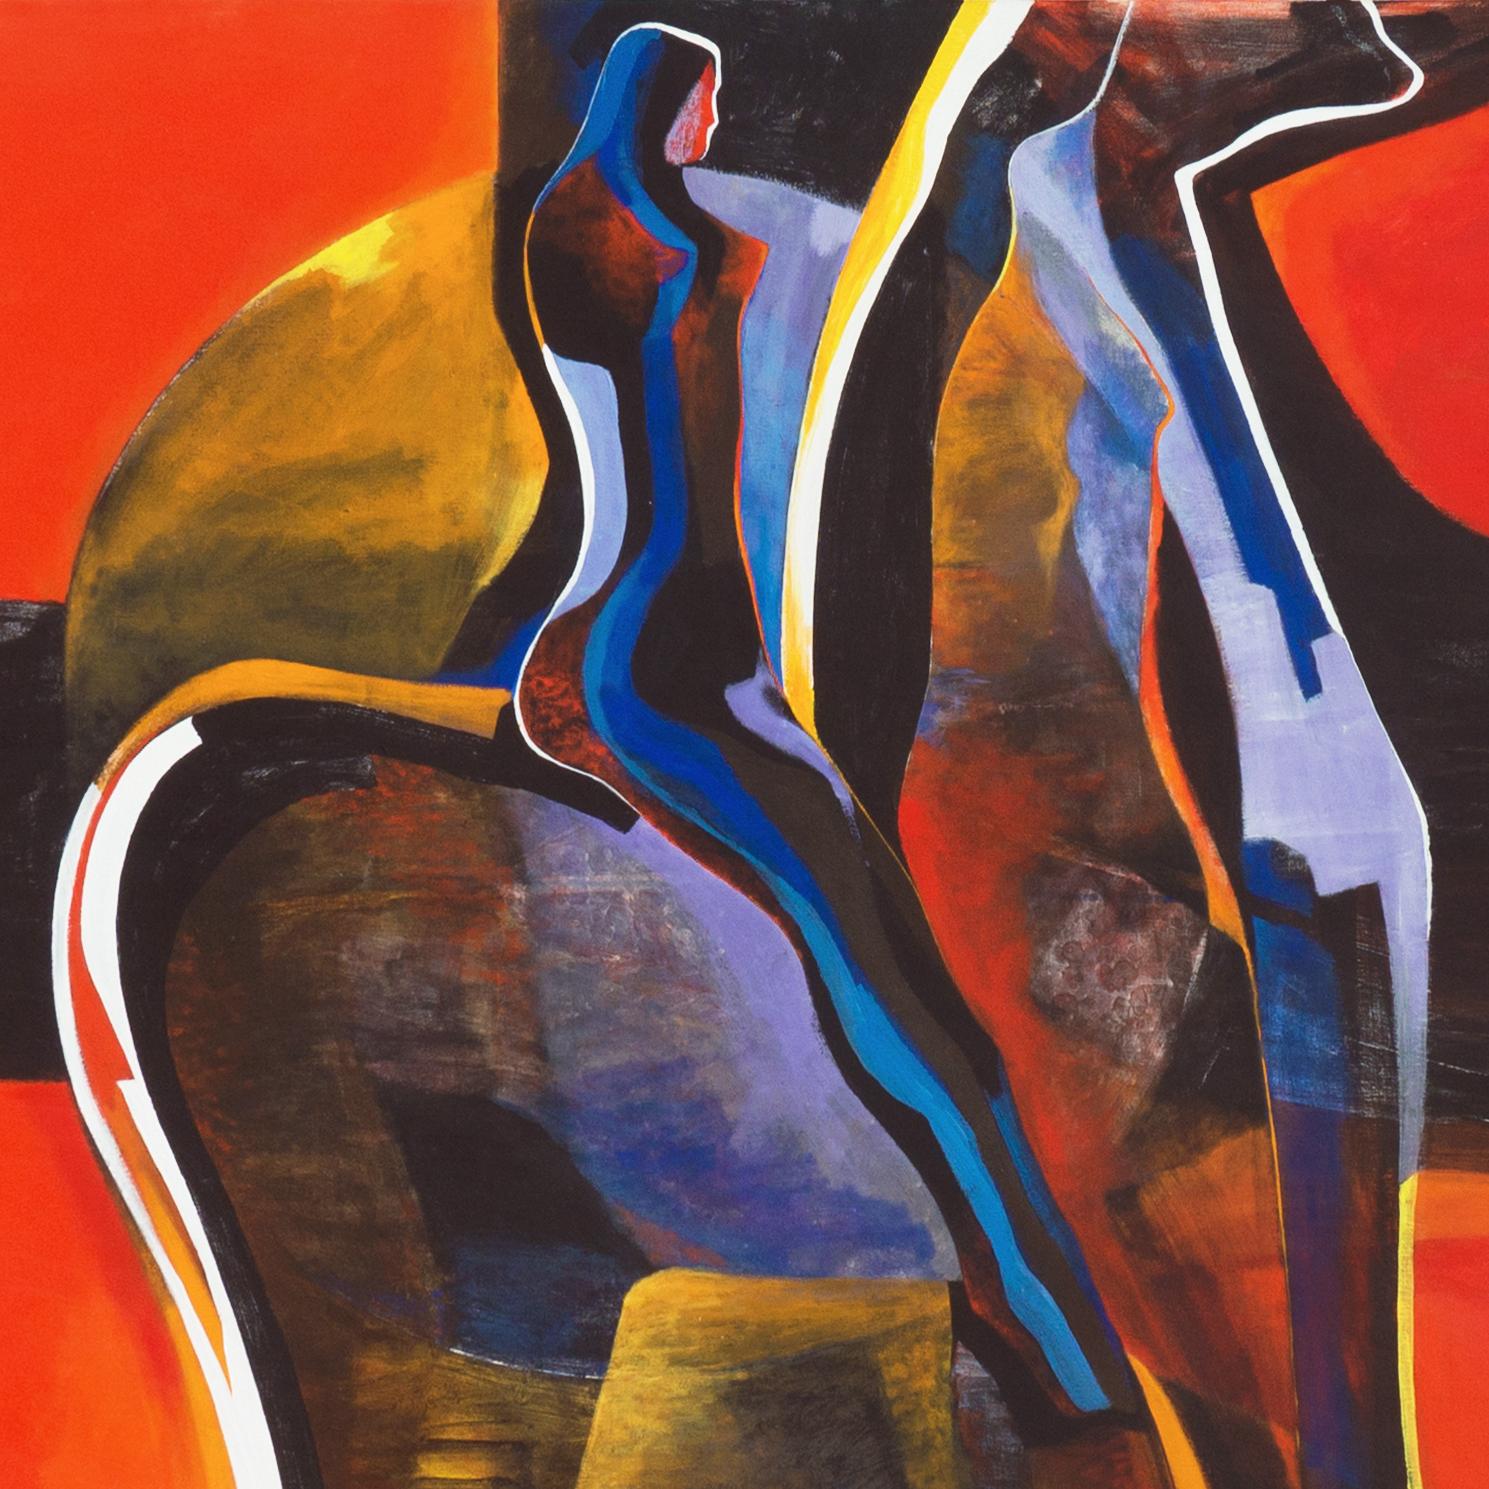 'Spirit Rider, Red Sky', Paris, NYMoMA, Columbia, Museo de Arte de Puerto Rico 1